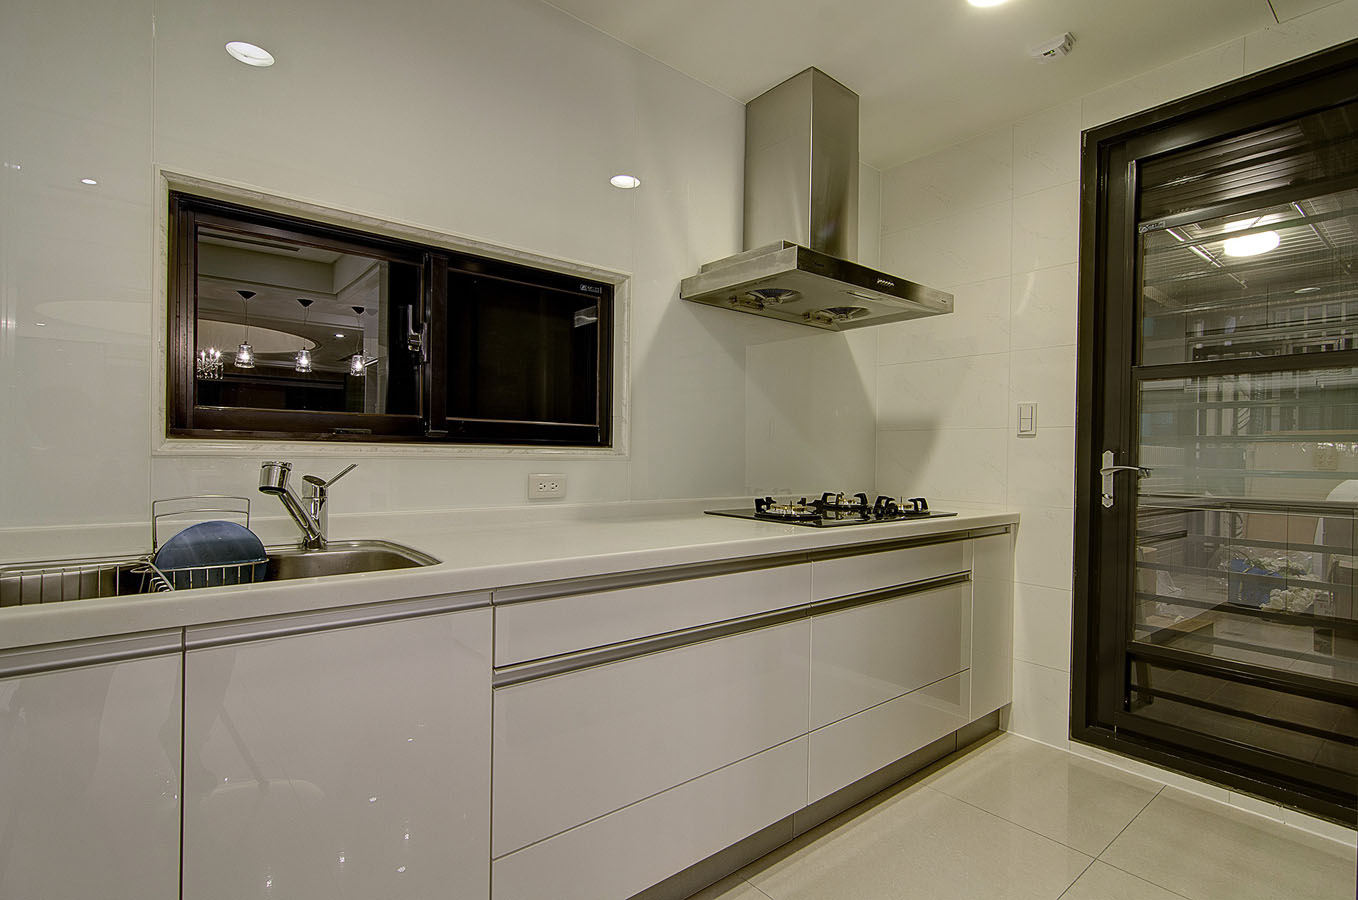 厨房动线流畅，主要以白色为主基调，凸显空间干净整洁的空间氛围。